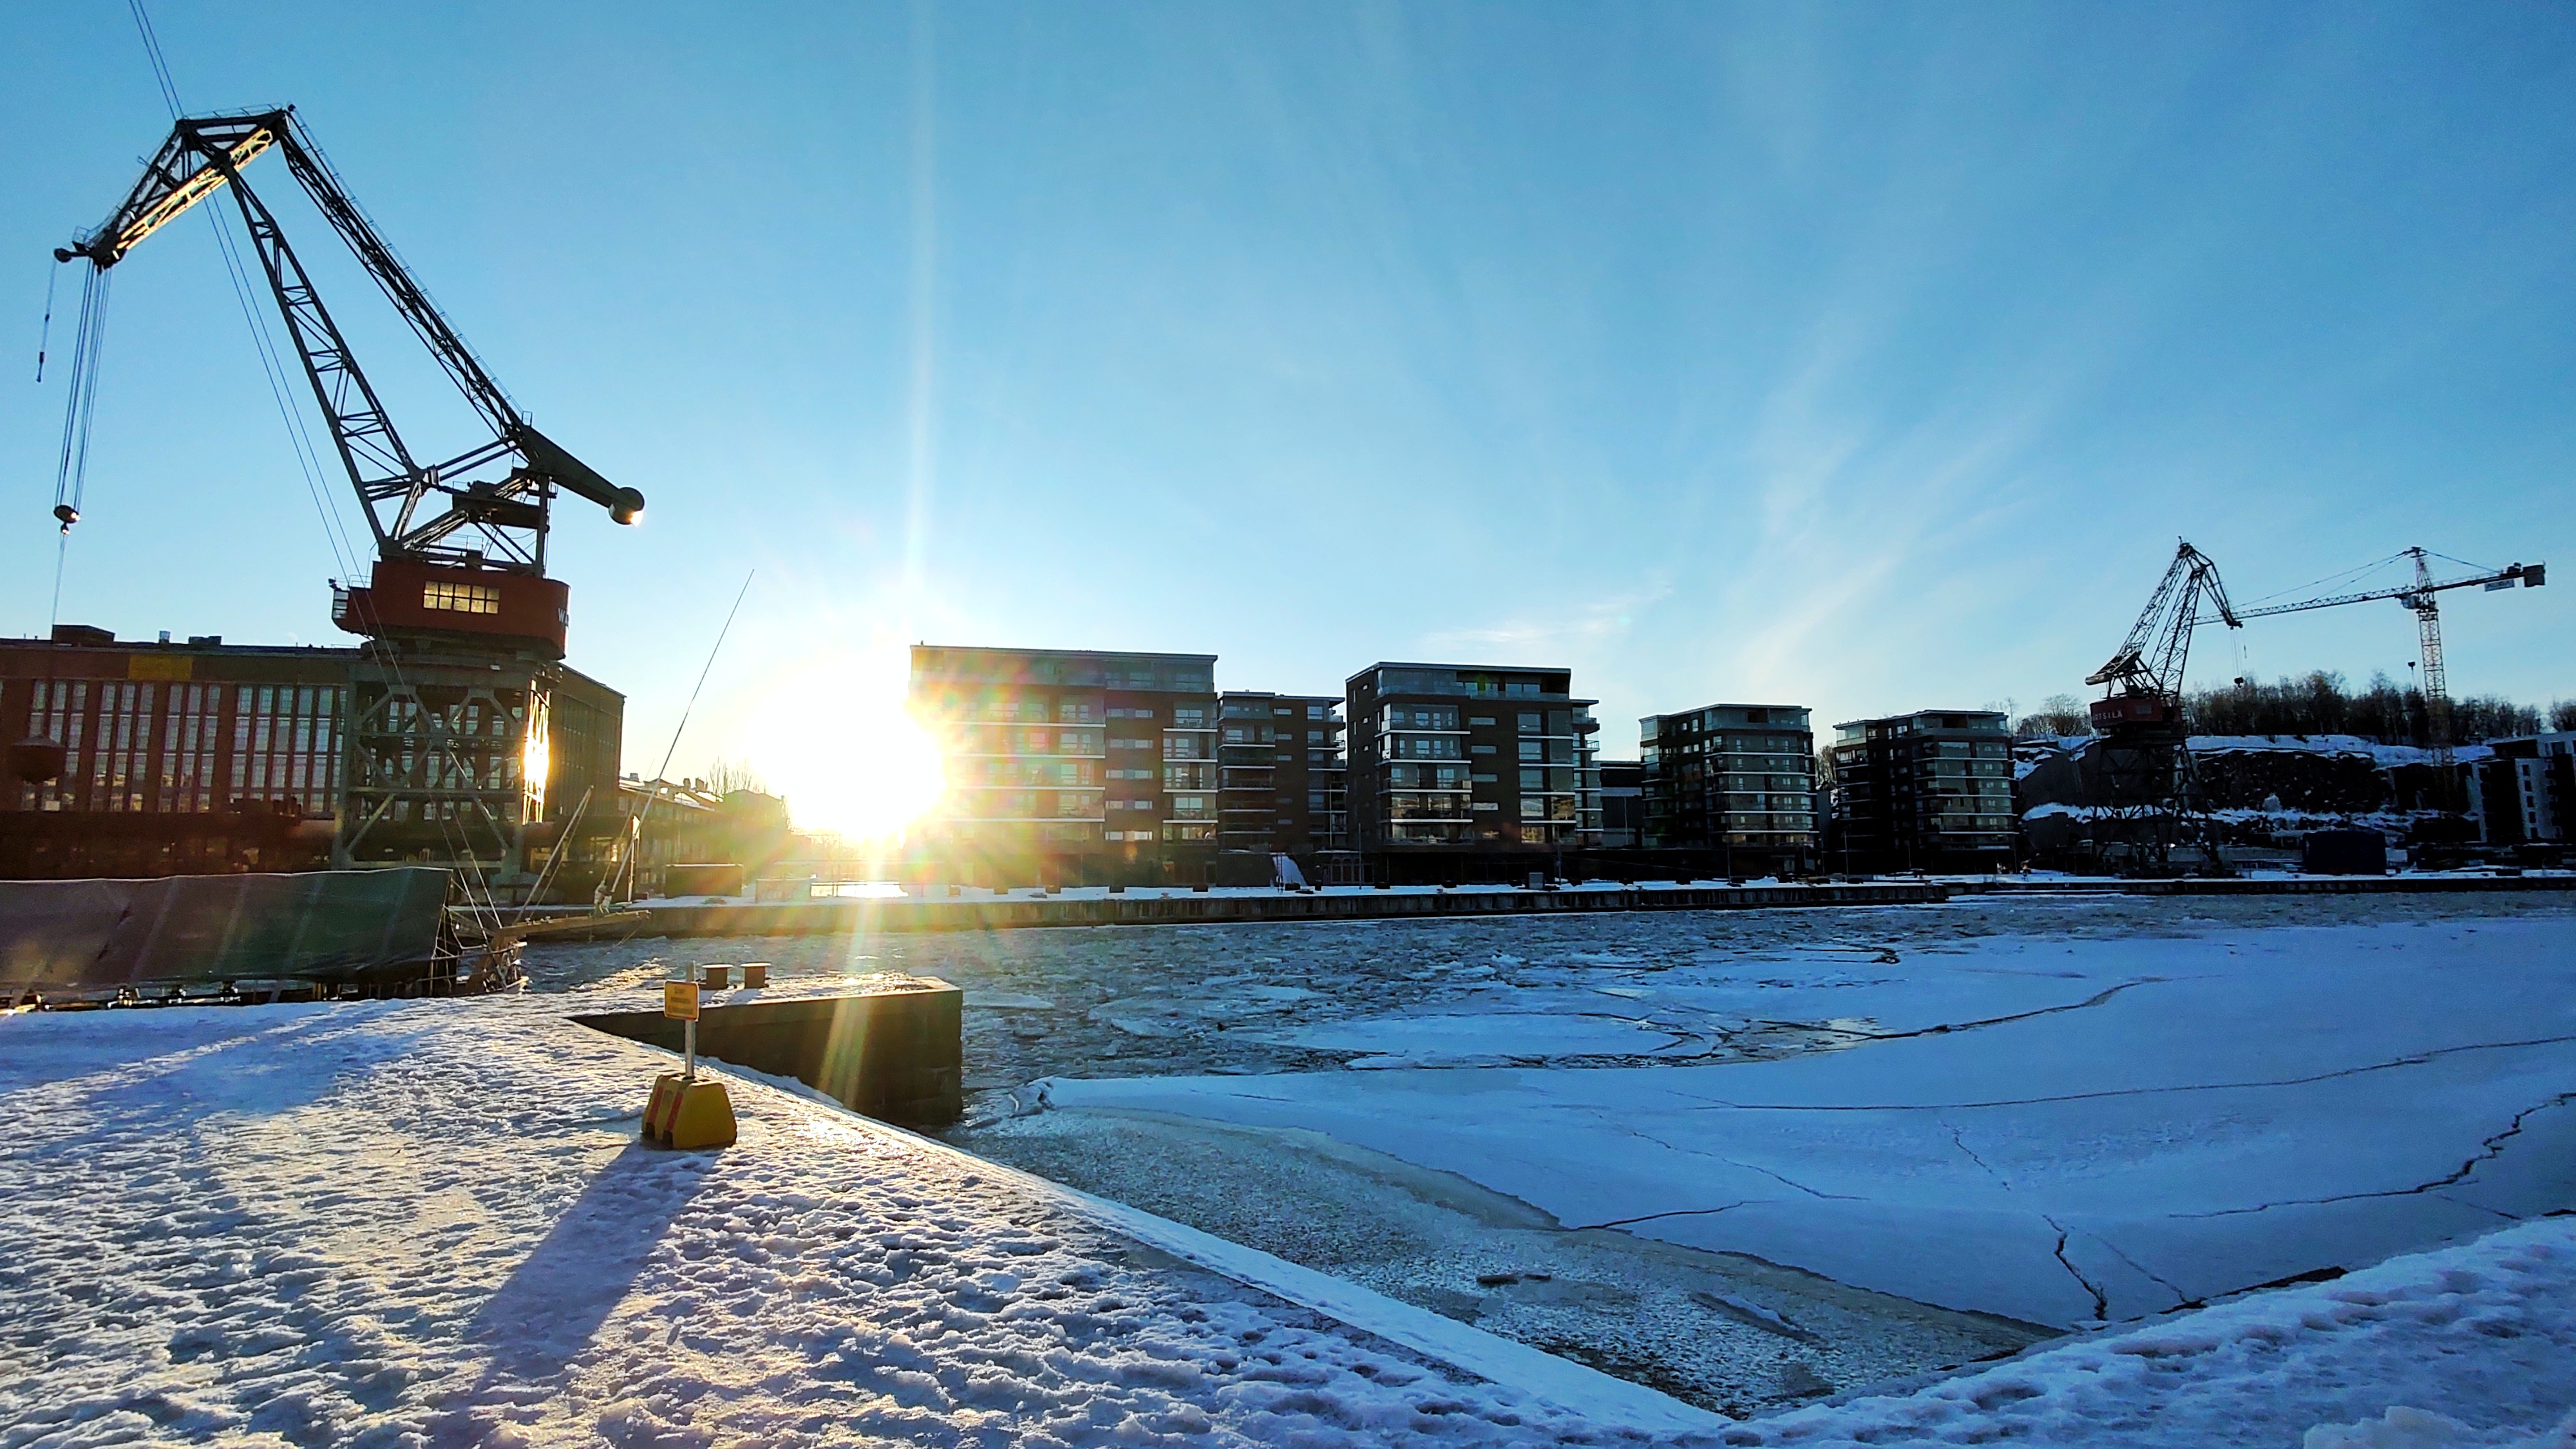 Cortada pelo Rio Aura, a cidade de Turku é um importante centro de inovação na Finlândia | FOTO: Marcelo Miranda Becker